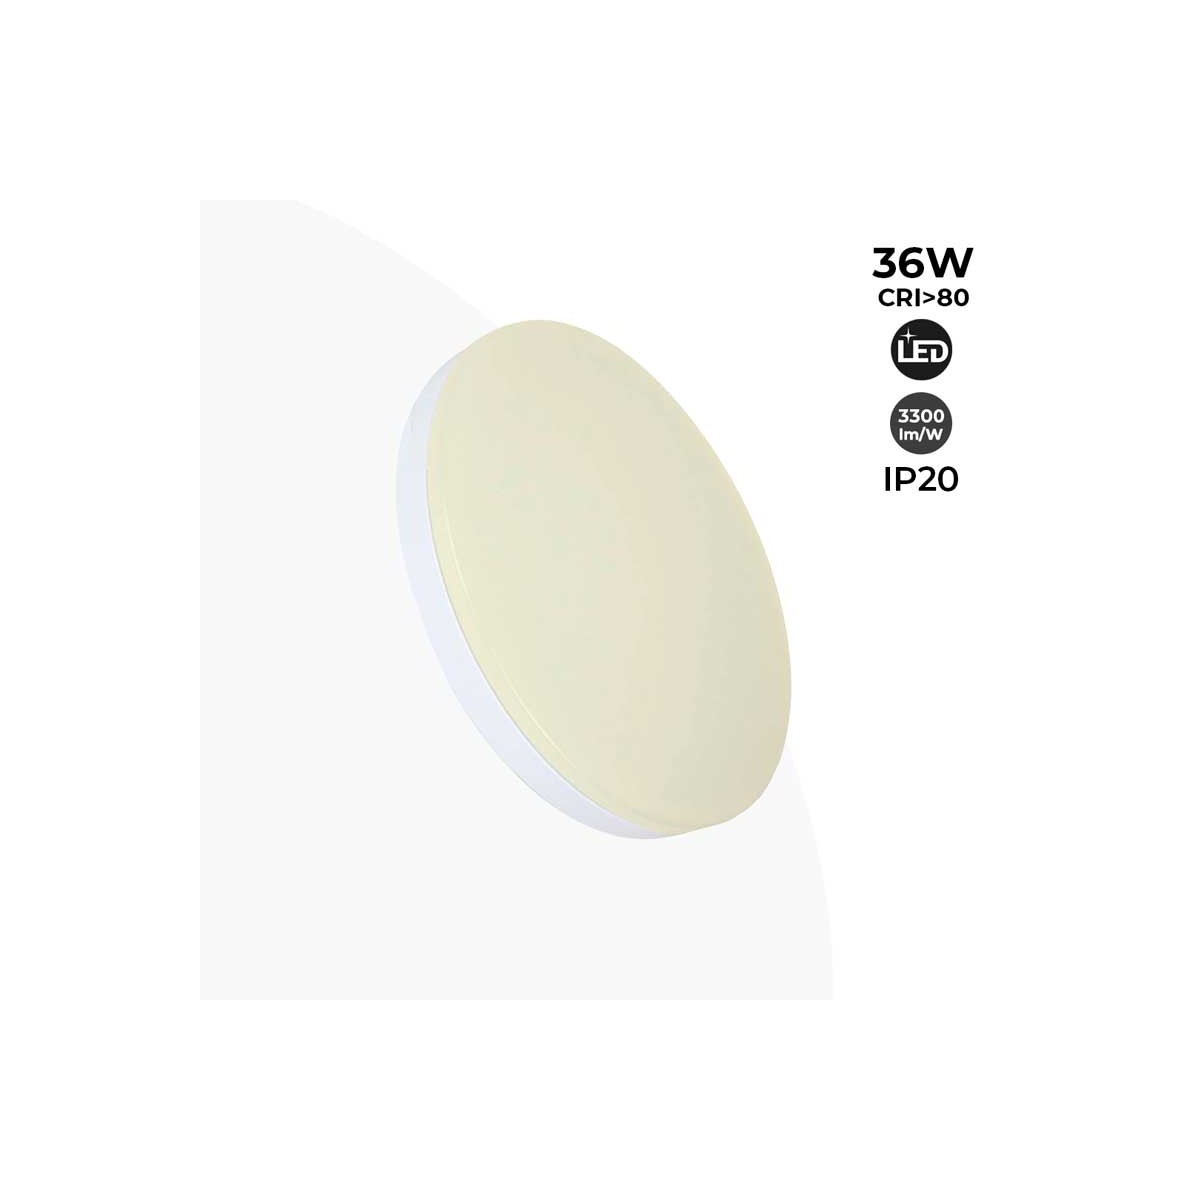 Plafon LED 36W de superfície circular branco IP20